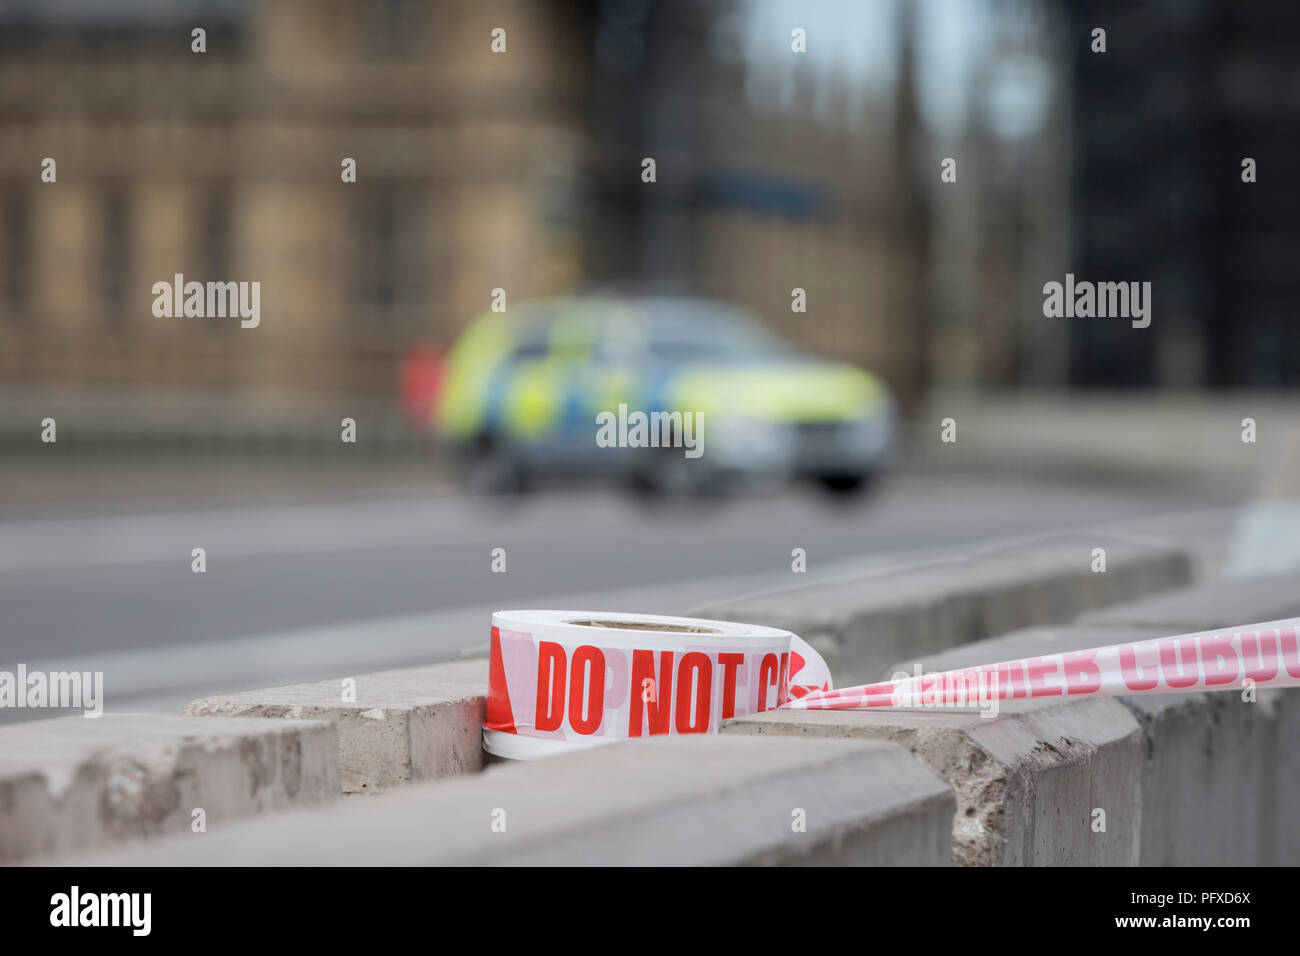 Polizei Bandblöcke Westminster Bridge und Westminster Erfahrungen die Lockdown mit umfangreichen Absperrungen und die Schließung von vielen Straßen nach dem, was die Polizei anrufen einer terroristischen Vorfall, bei dem ein Auto war in Sicherheit Sperren außerhalb des Parlaments in London stürzte, am 14. August 2018 in London, England. Stockfoto